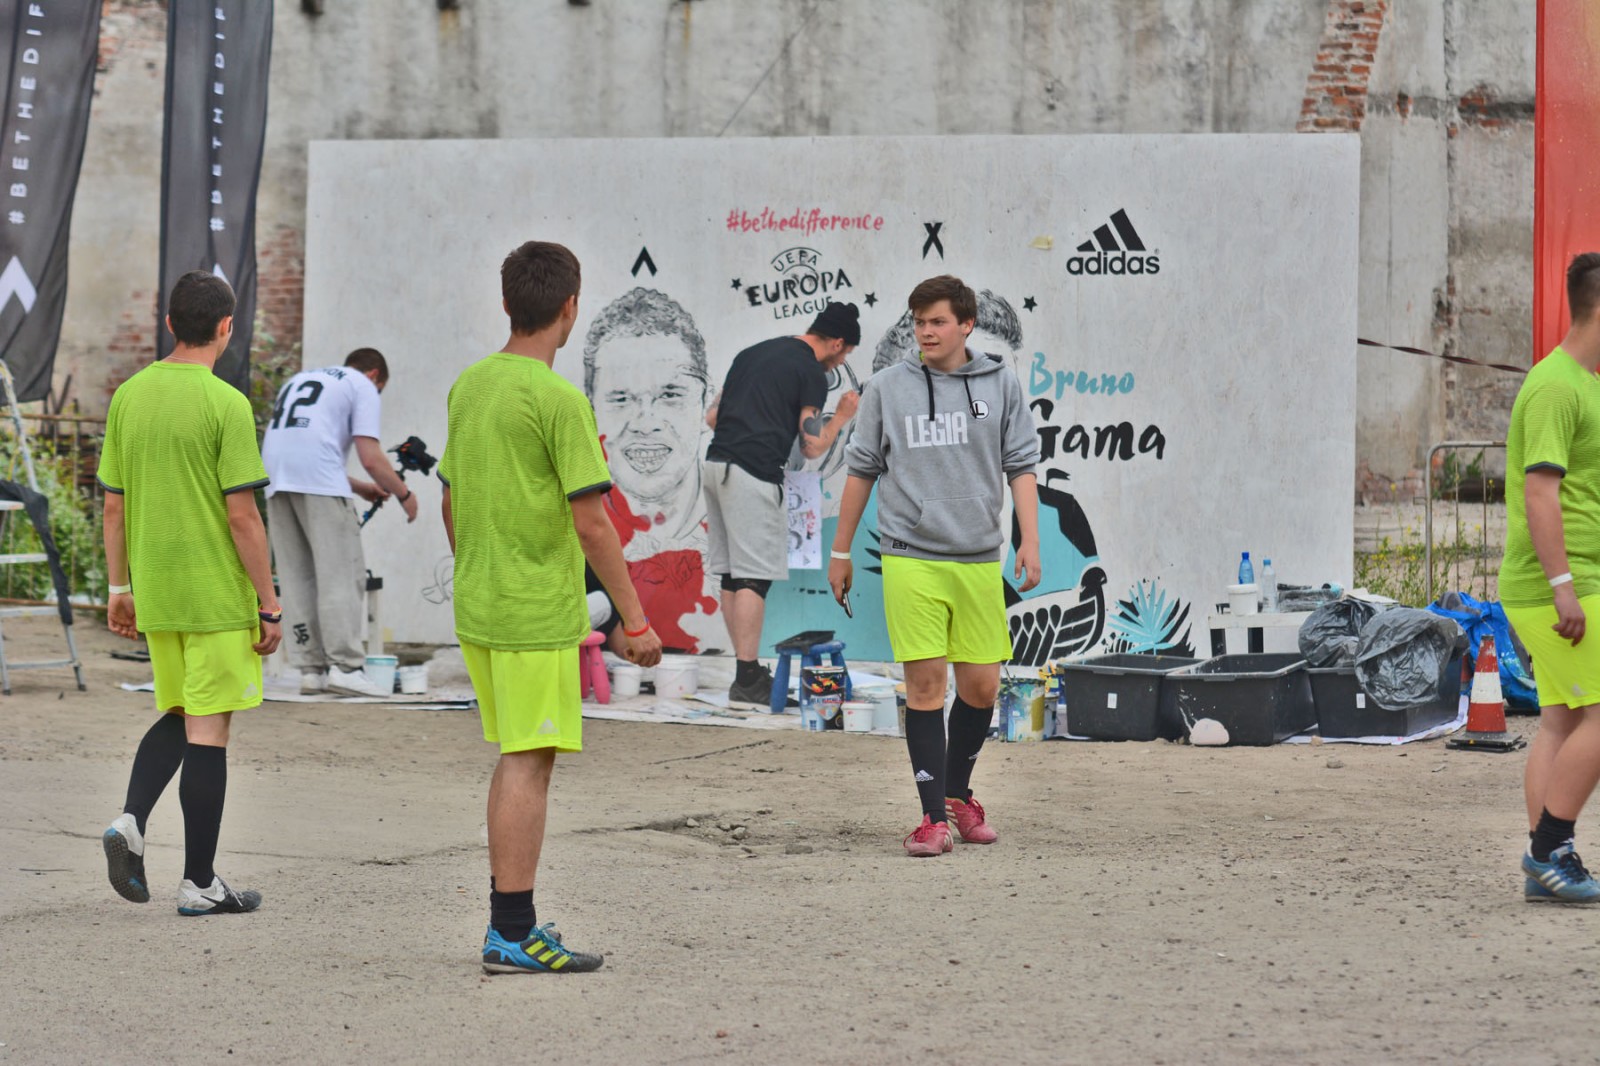 Mural dla Adidas be the difference Warszawa | projekt specjalny na zlecenie Adidas | Portfolio